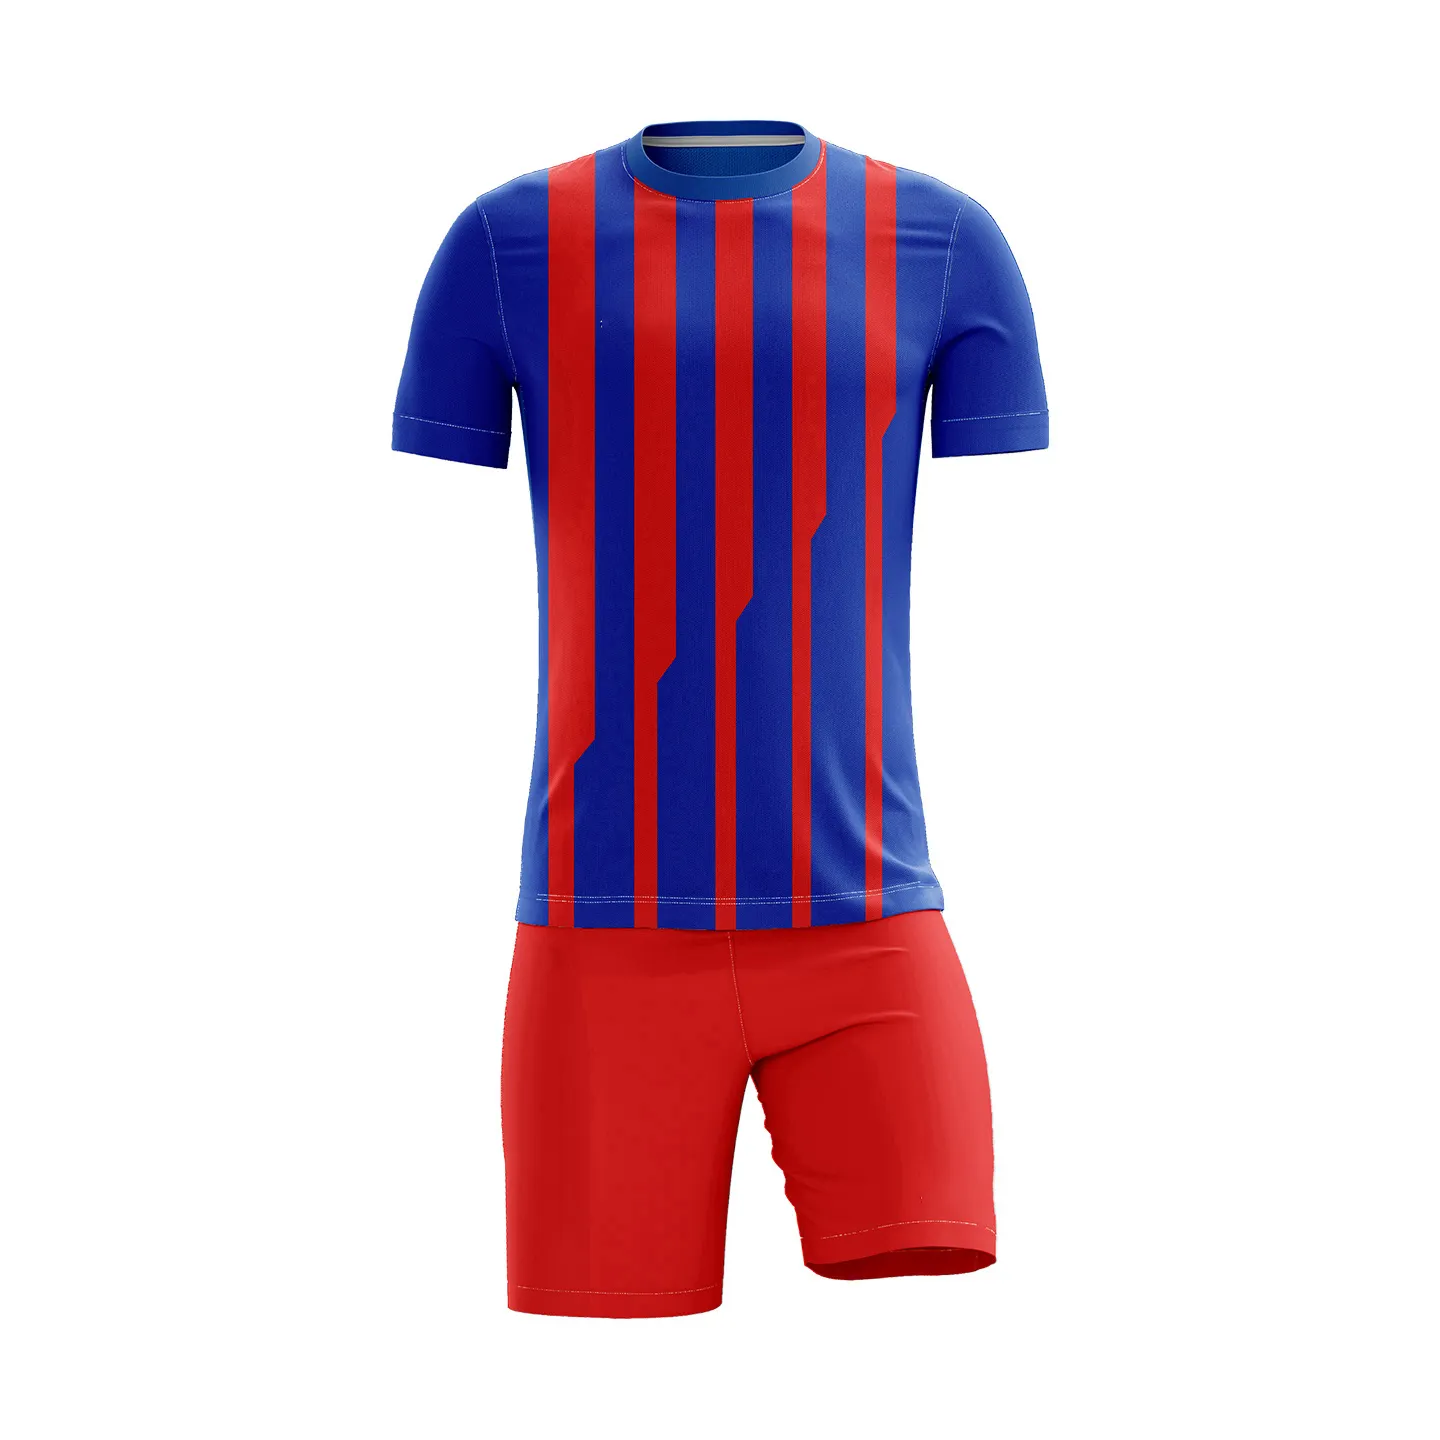 Tecido macio 100% melhor qualidade barato baixo preço futebol jerseys uniformes com serviço de logotipo personalizado